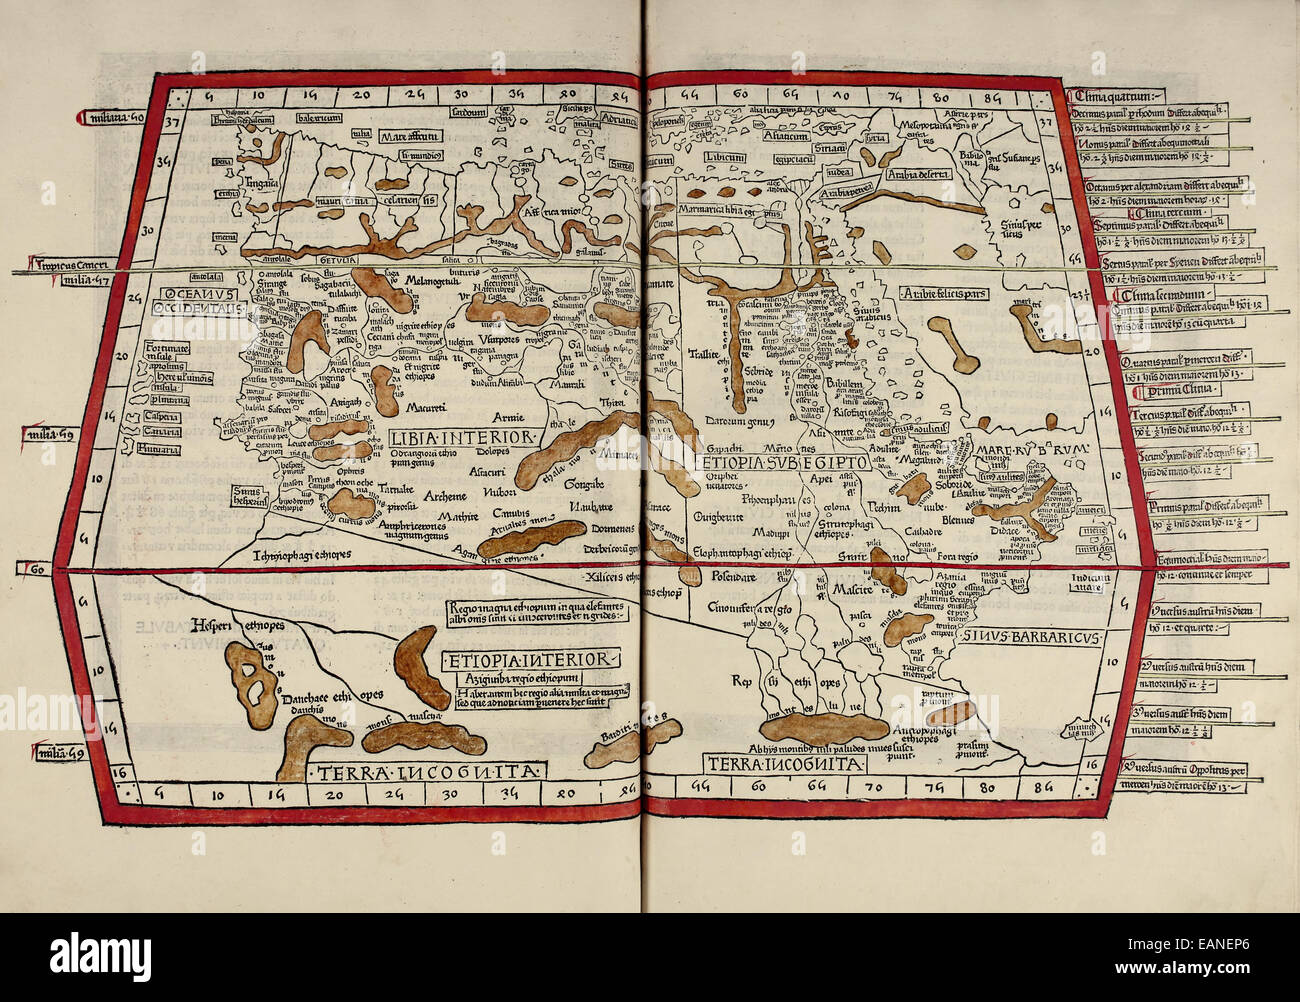 Karte von Libyen und Äthiopien von "Cosmographia" von Claudius Ptolemäus (Ptolemaeus) (90-168AD). Siehe Beschreibung für mehr Informationen. Stockfoto